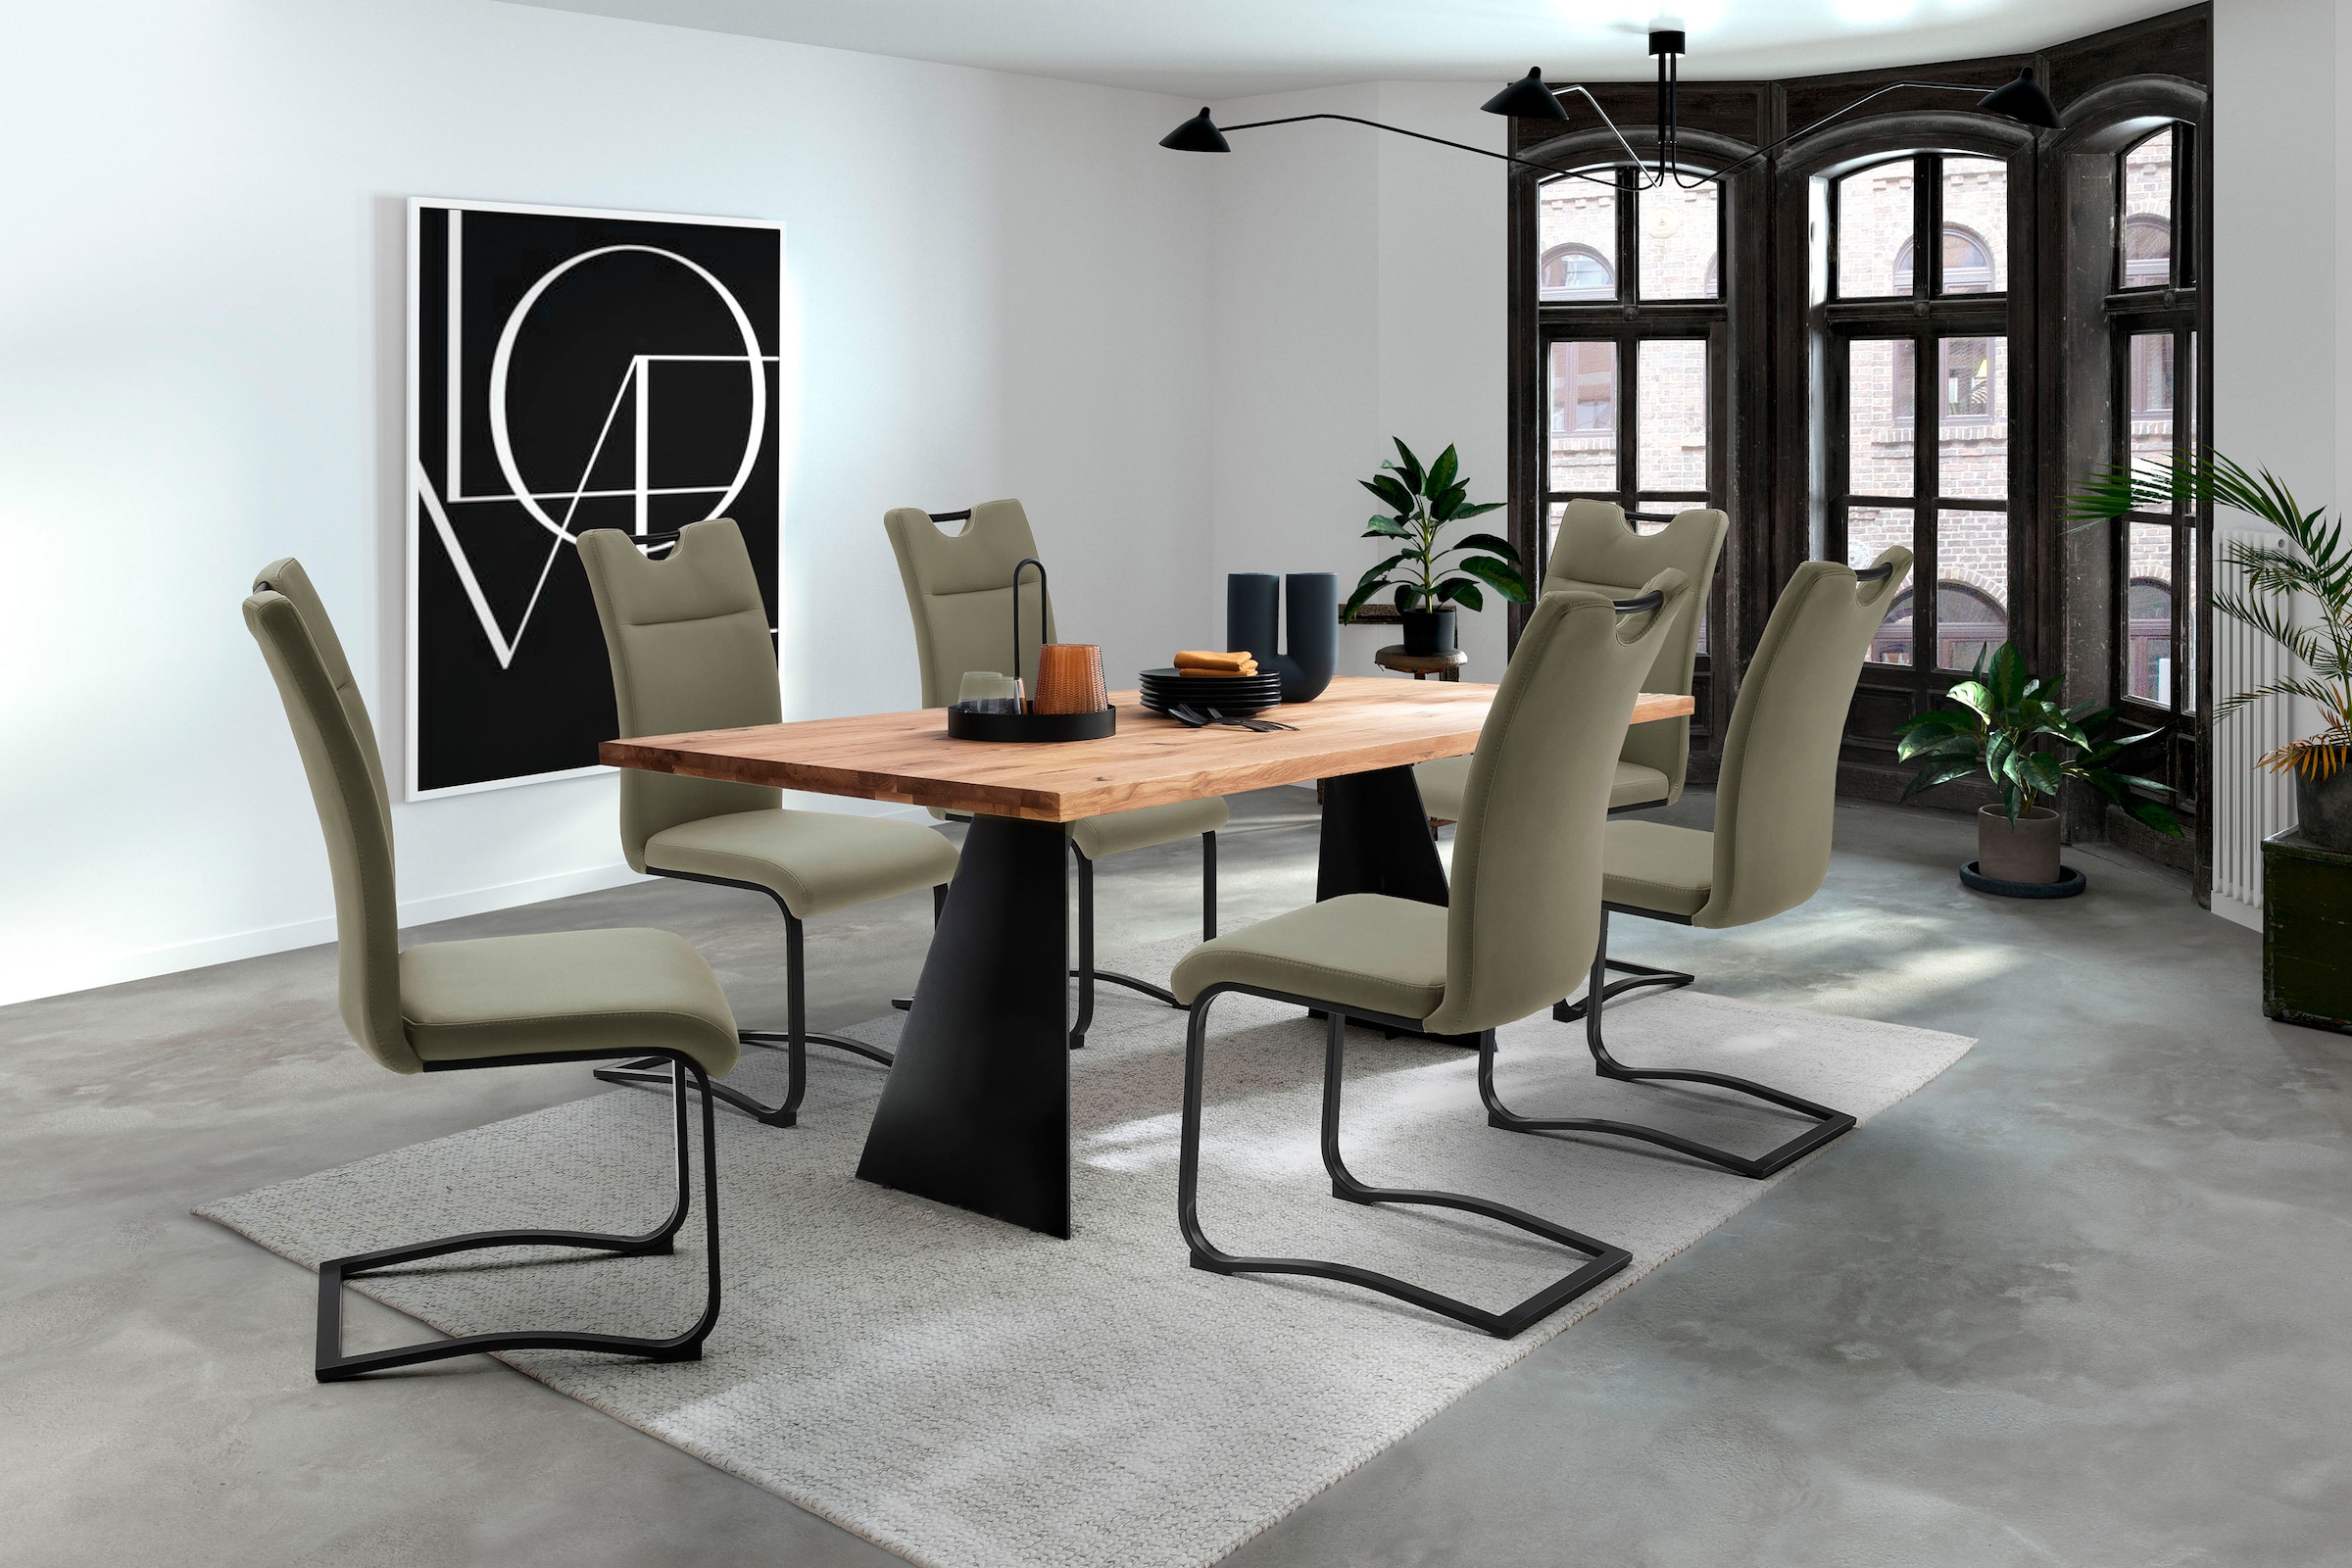 MCA furniture Esstisch »Goa«, Massivholz Tisch, Esstisch in Wildeiche Massiv FSC-Zertifiziert